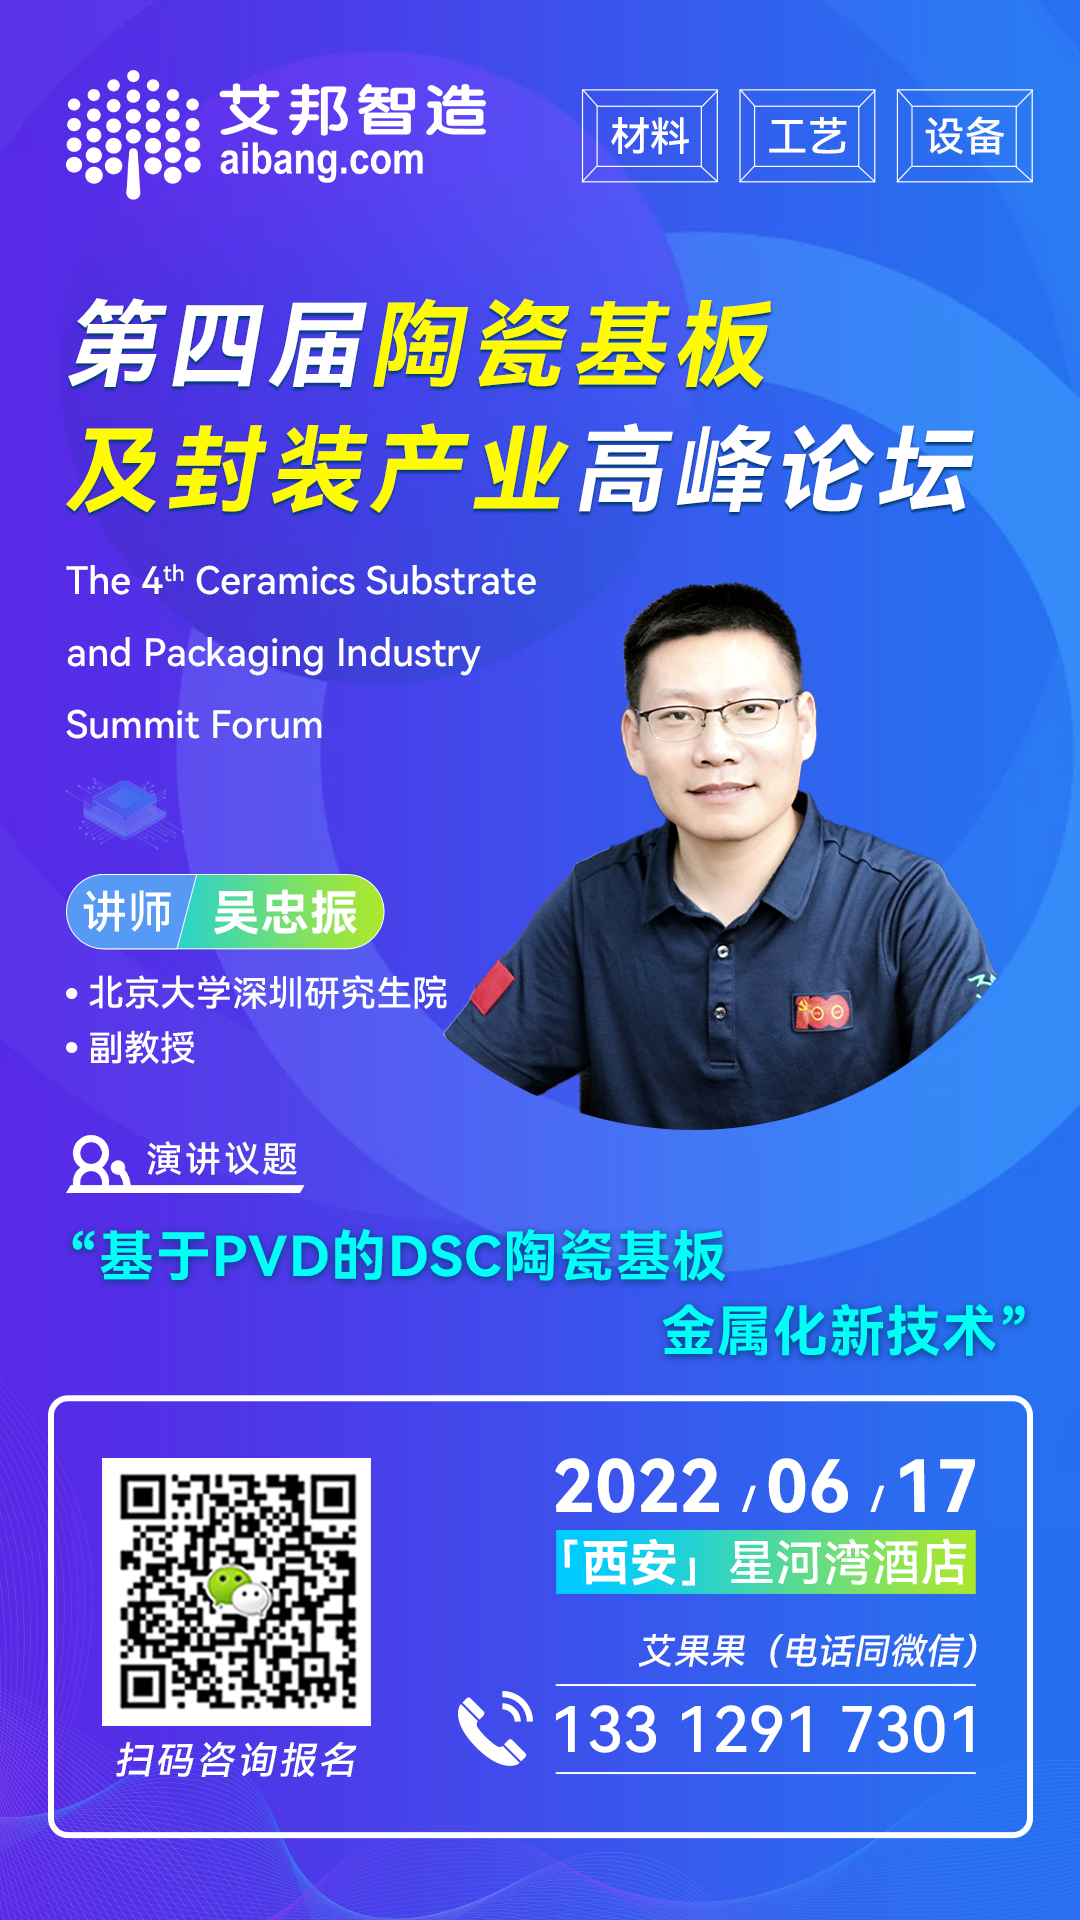 北京大学深圳研究生院将出席第四届陶瓷基板及封装产业高峰论坛并做主题演讲